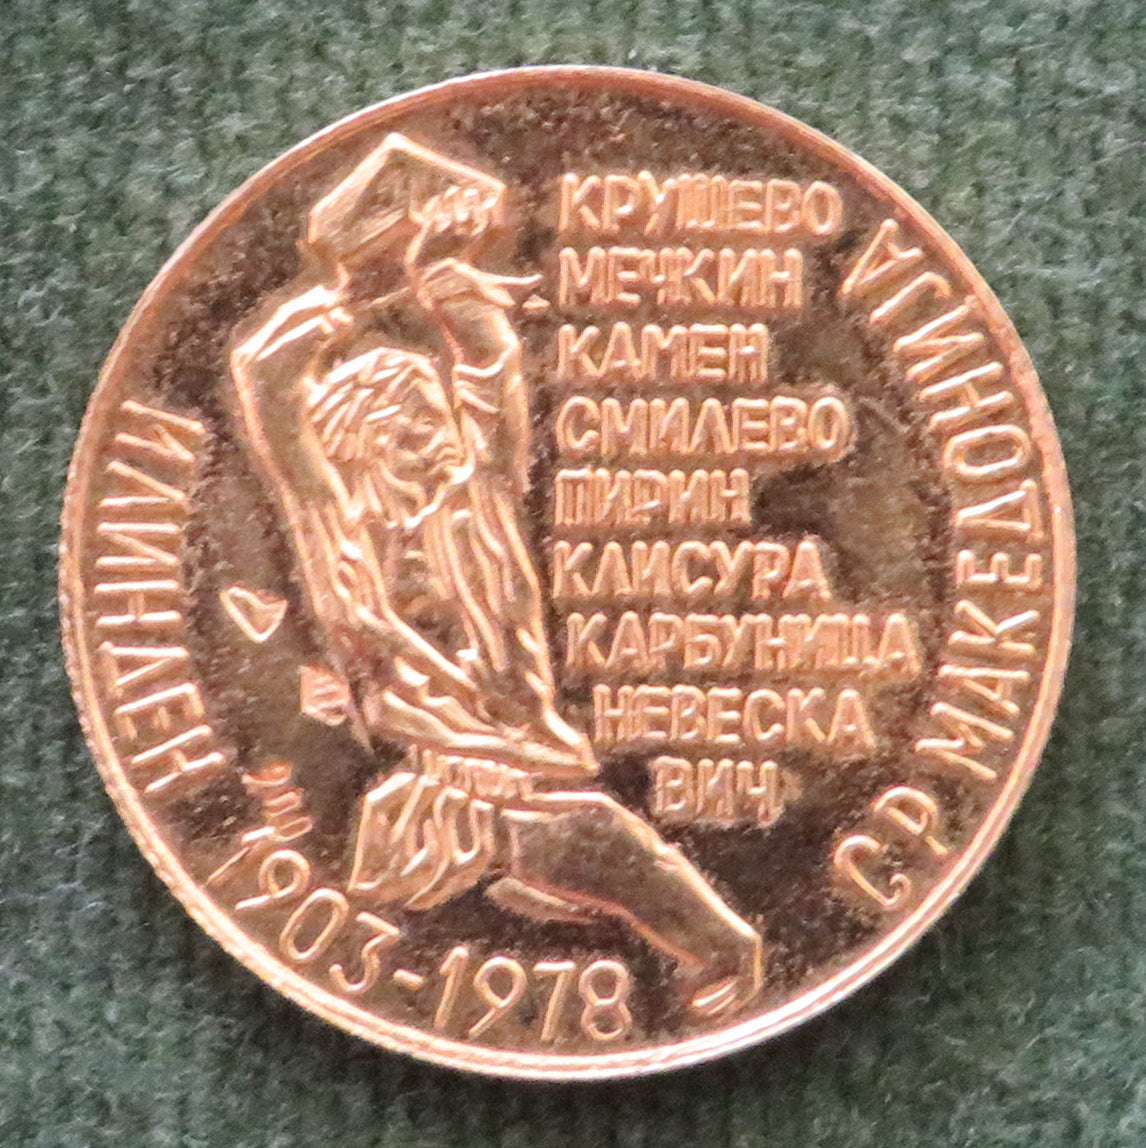 Macedonian Gold Commemorative Coin Token 1903 - 1978 of Nikola Karev